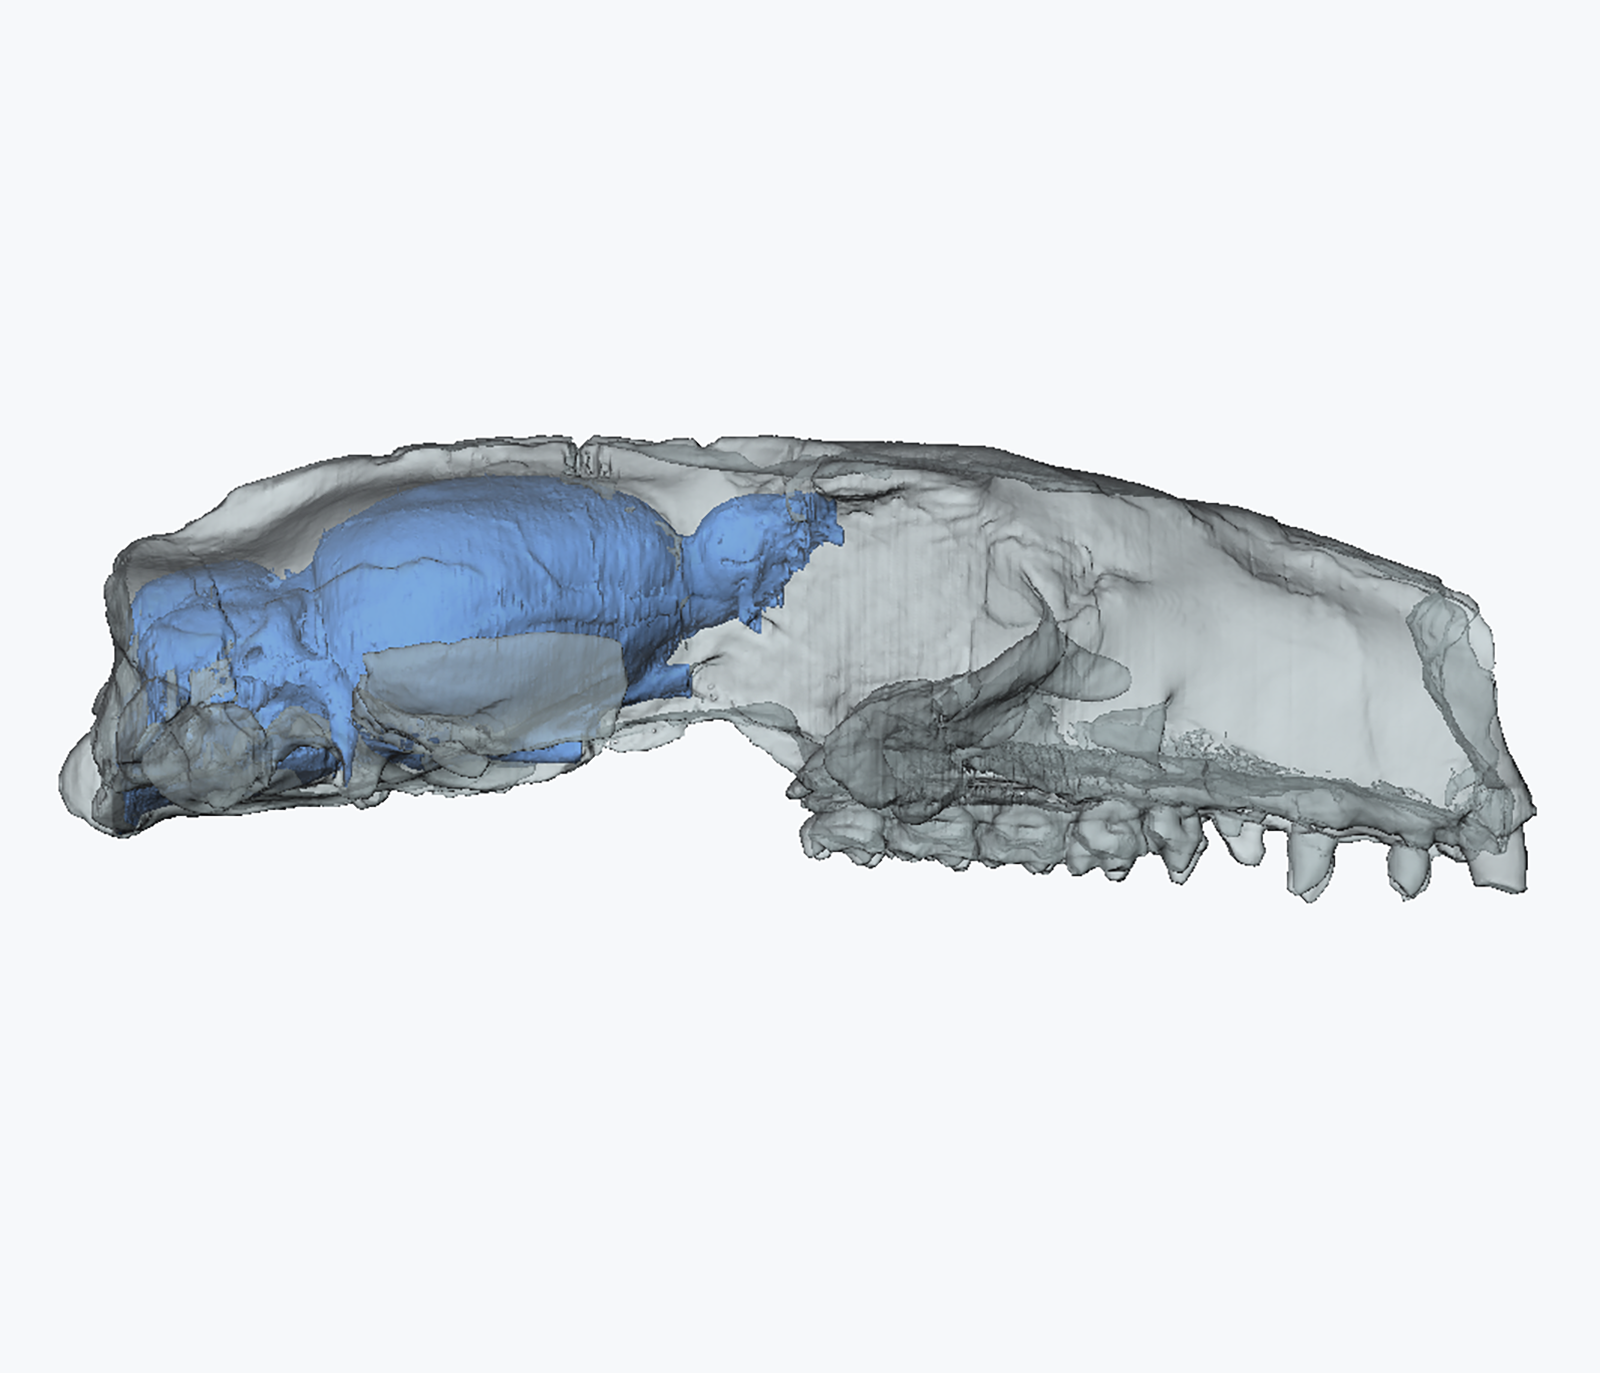 Cranium of a plesiadapiform primate